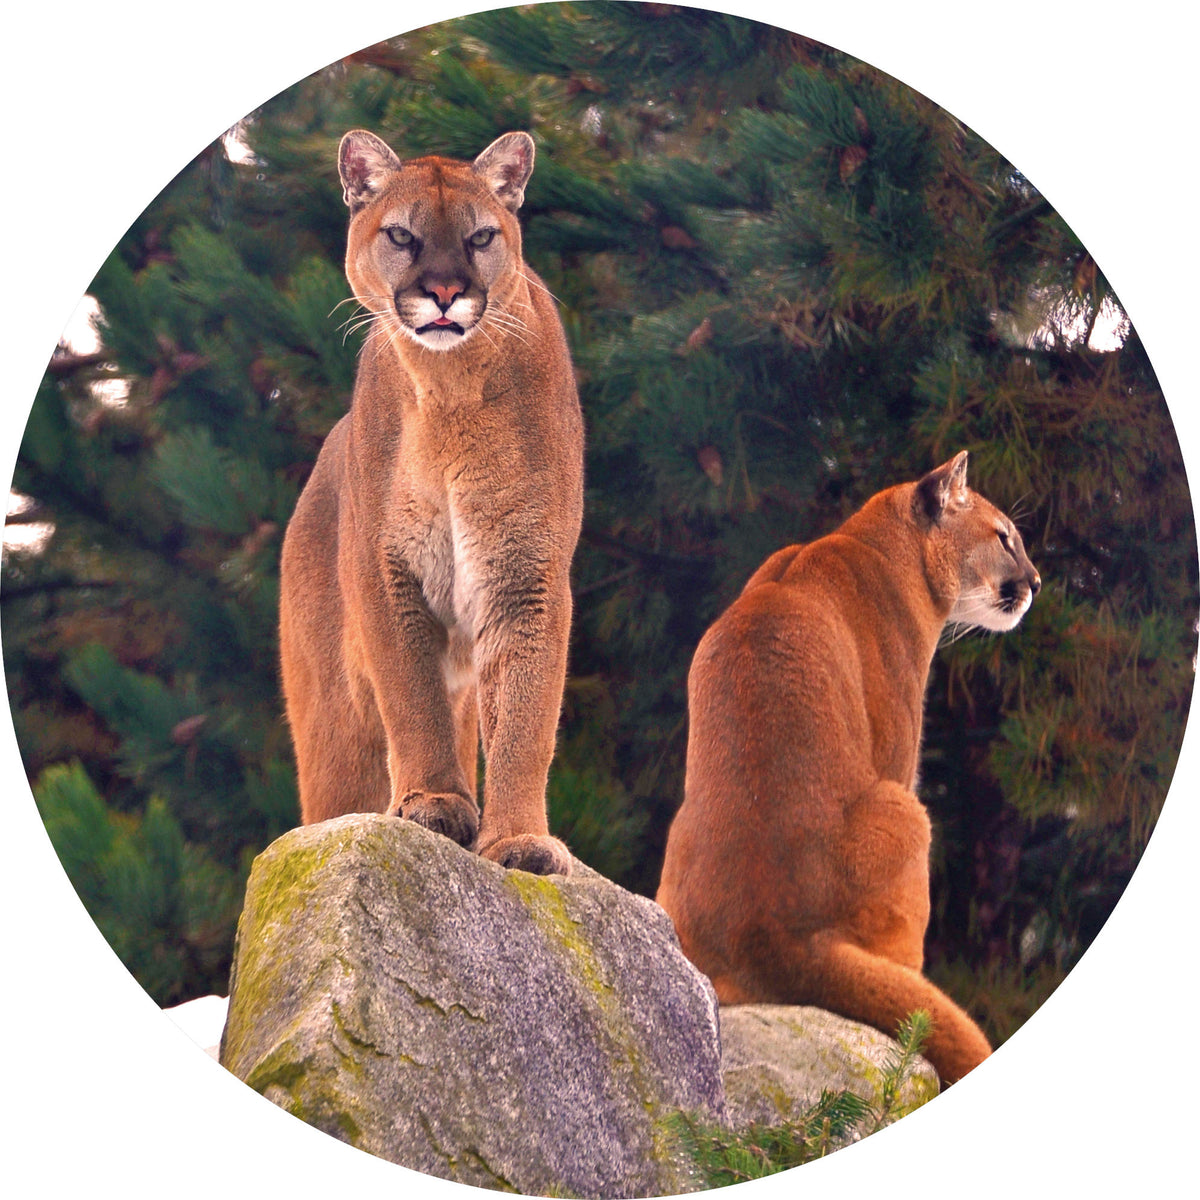 File:Parque Zoológico de São Paulo - Sao Paulo Zoo - Onça-parda, Suçuarana  - Puma, cougar, panther, mountain lion (11539699575).jpg - Wikimedia Commons